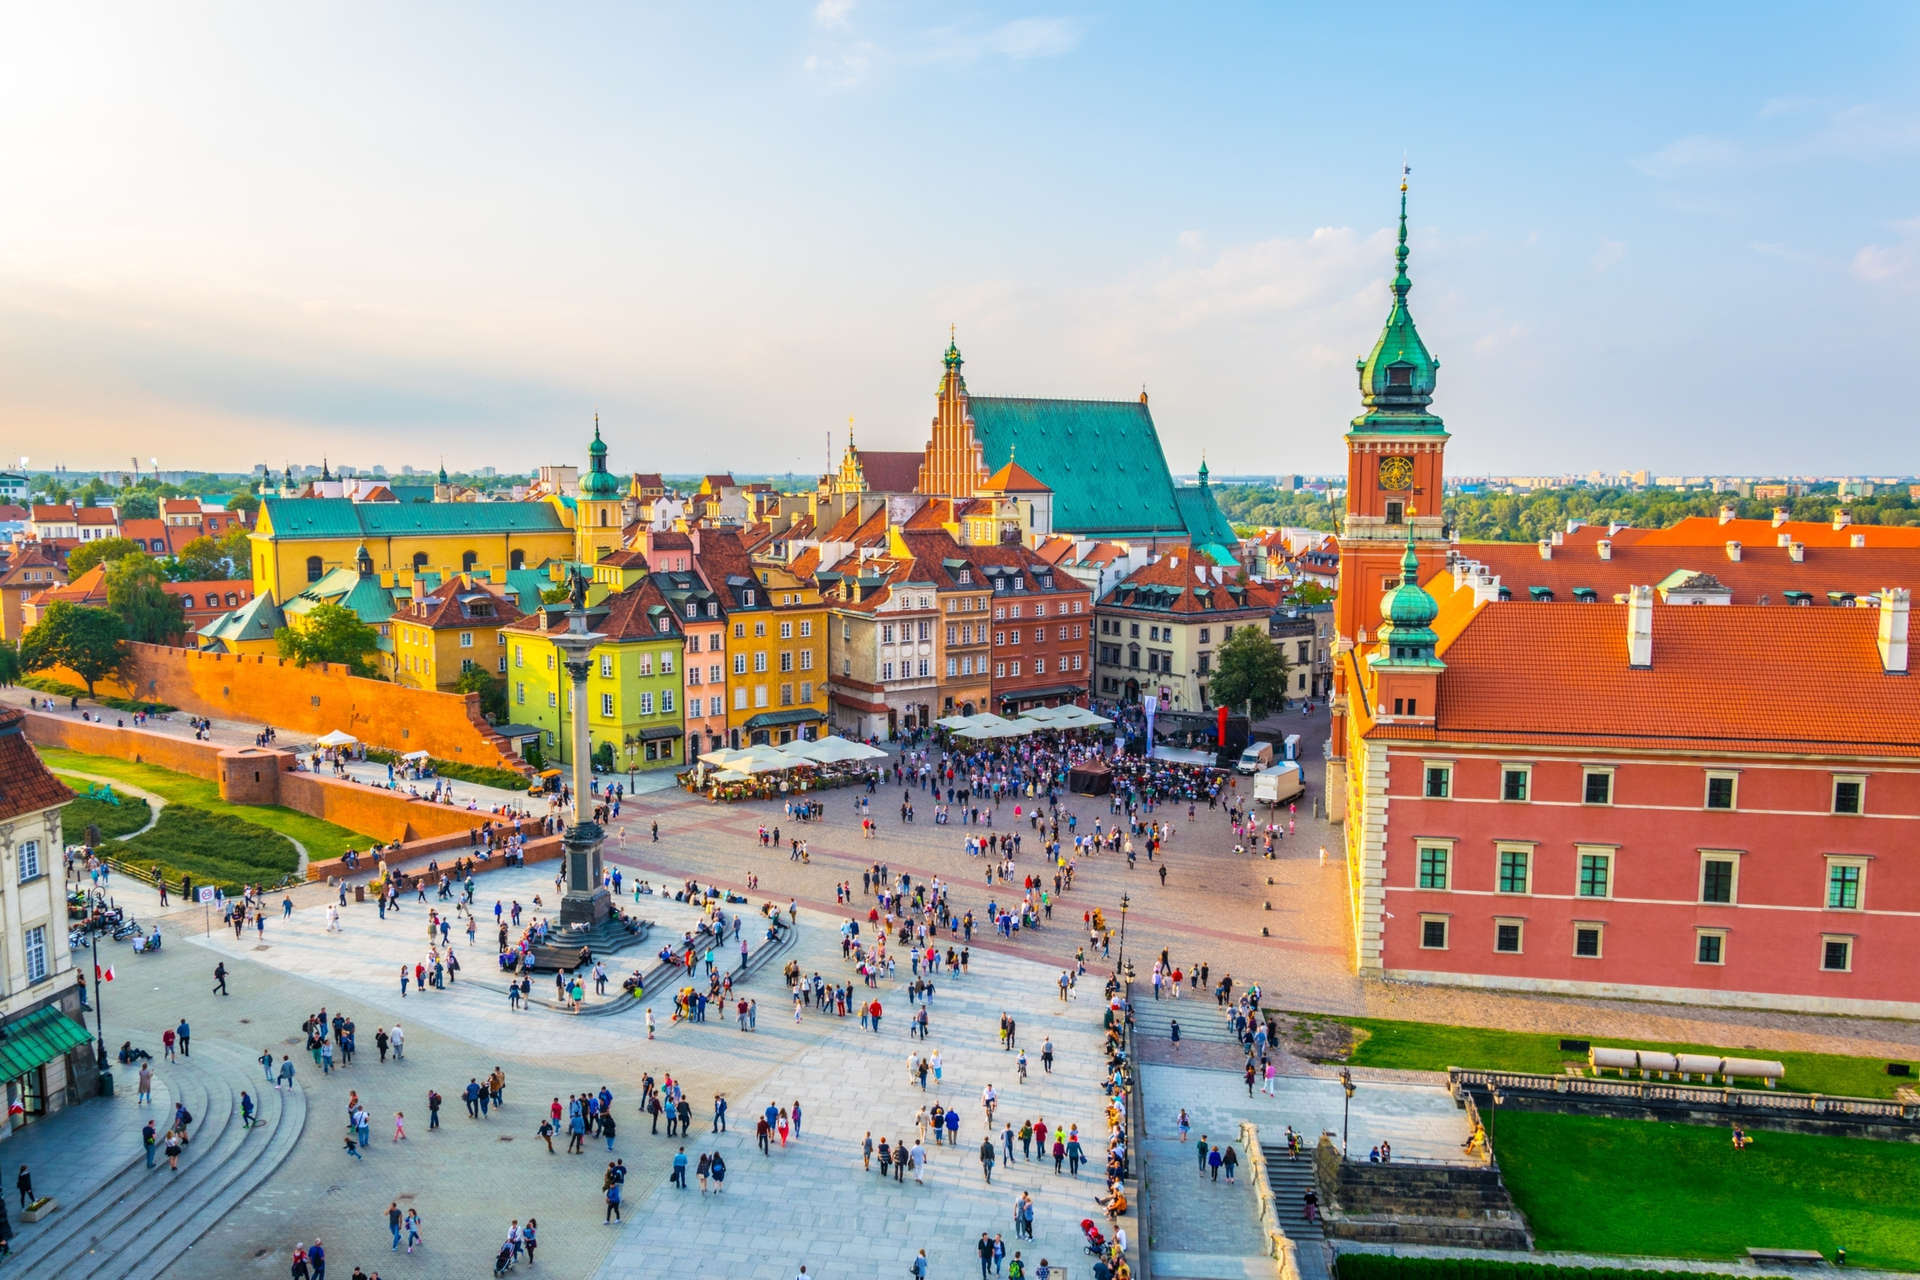 Pasee por el casco antiguo reconstruido de Varsovia, con su alboroto de edificios góticos, renacentistas y barrocos